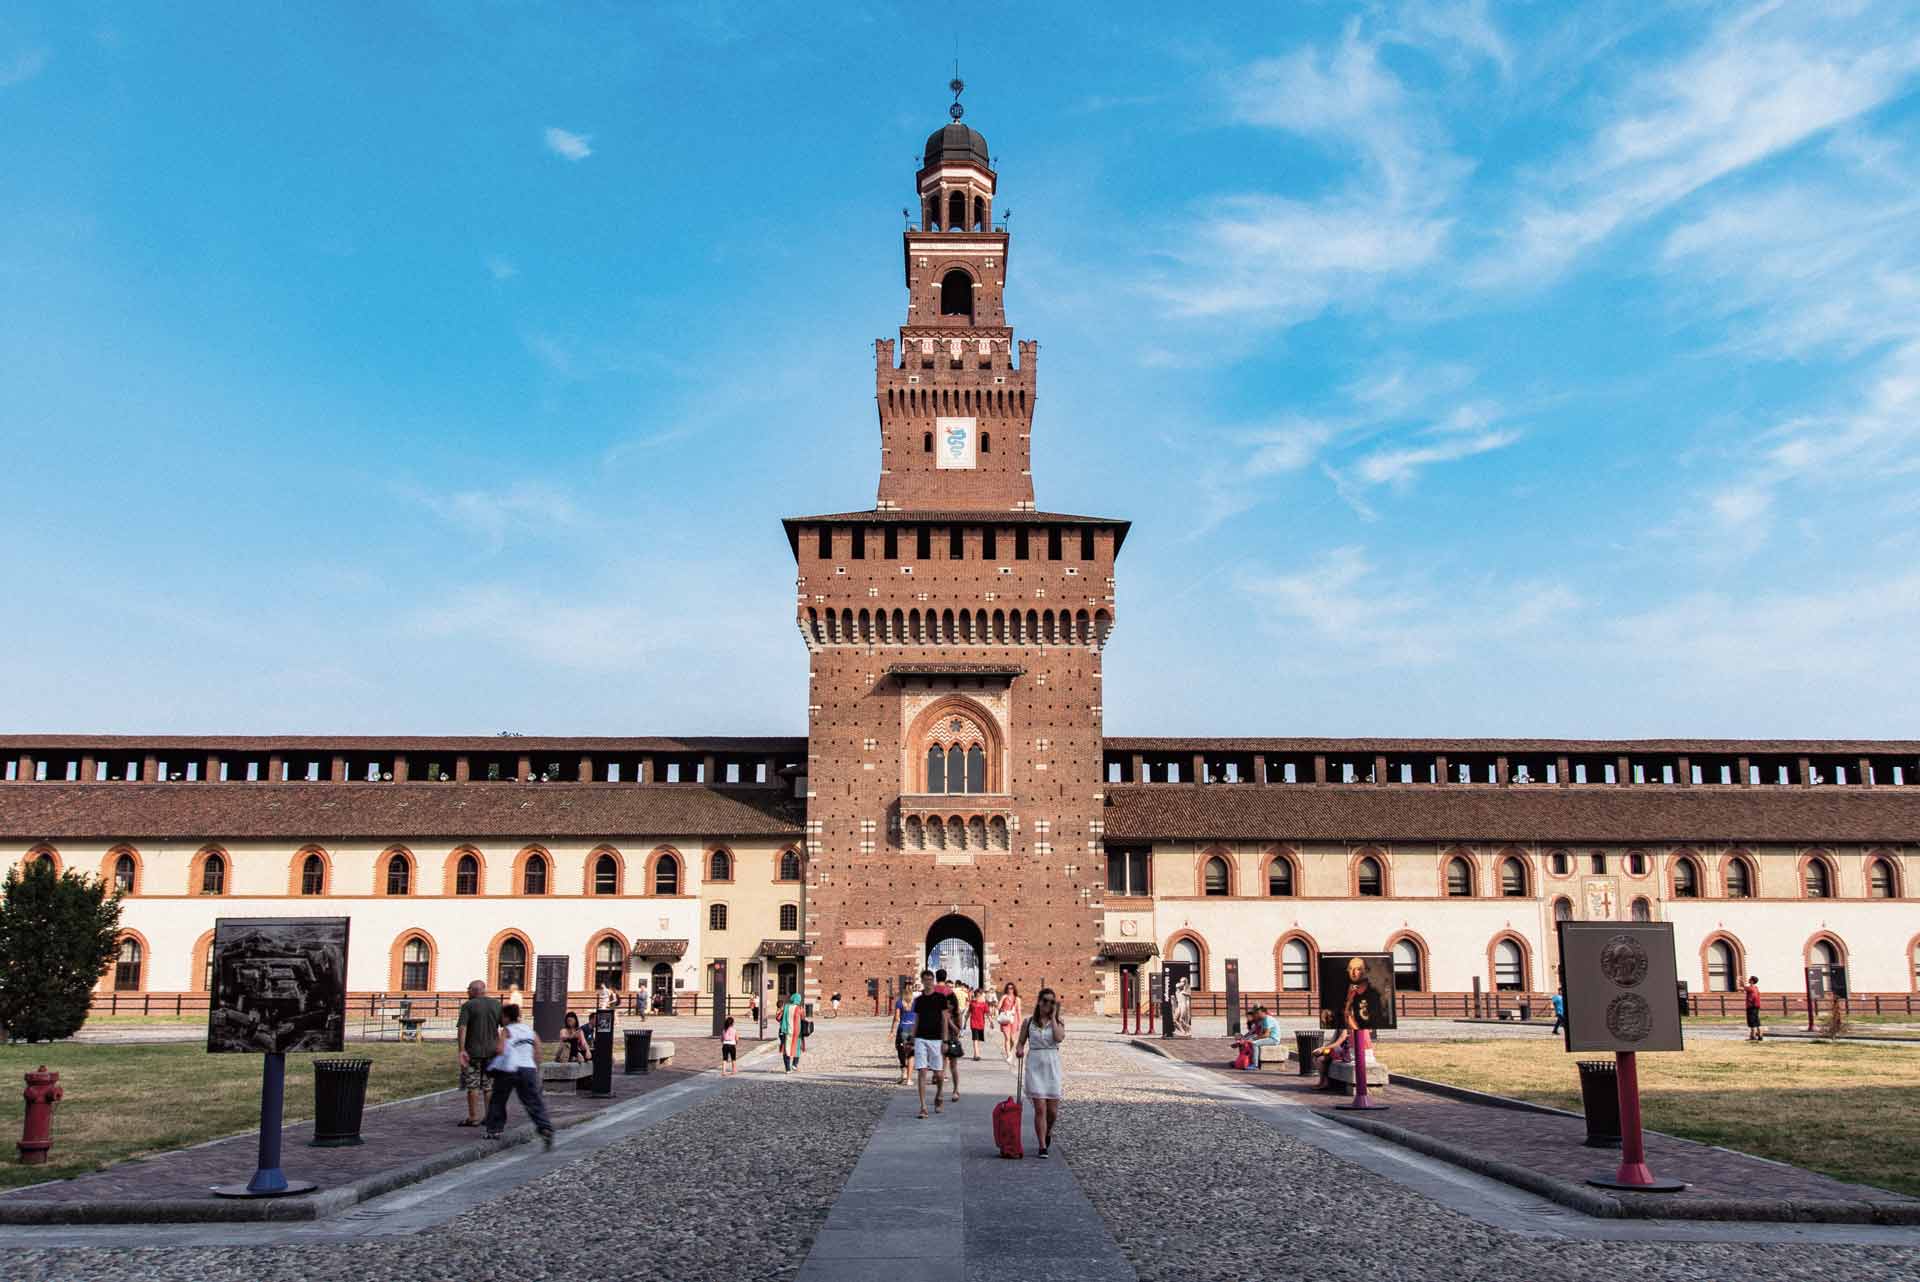 View of Sforza Castle in Milano